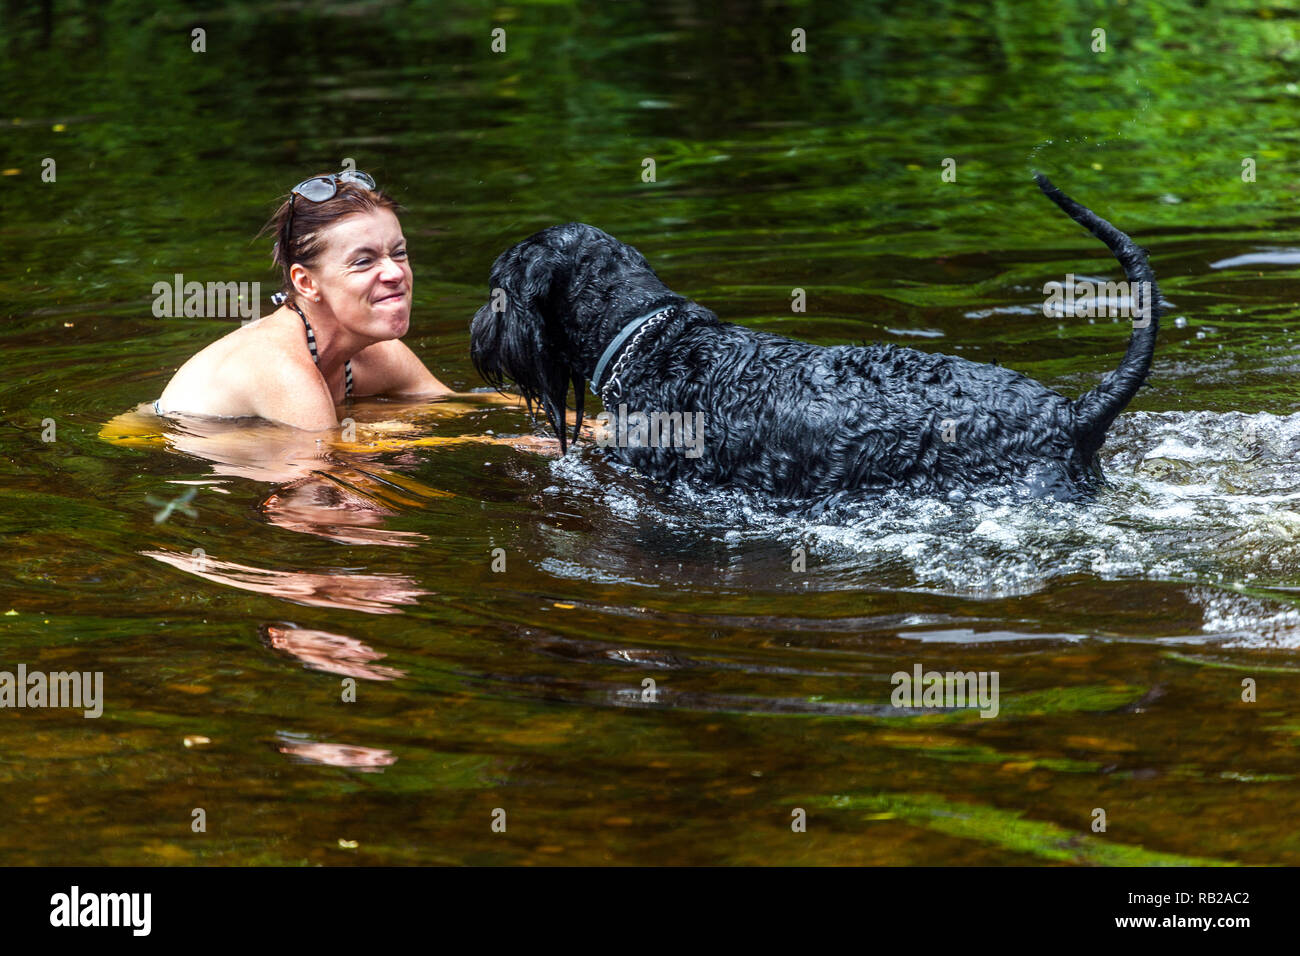 Frau spielt mit einem Schnauzer Hund im Wasser, Sommerurlaub am Fluss, Tschechische Republik Frau Hund Wasser Stockfoto